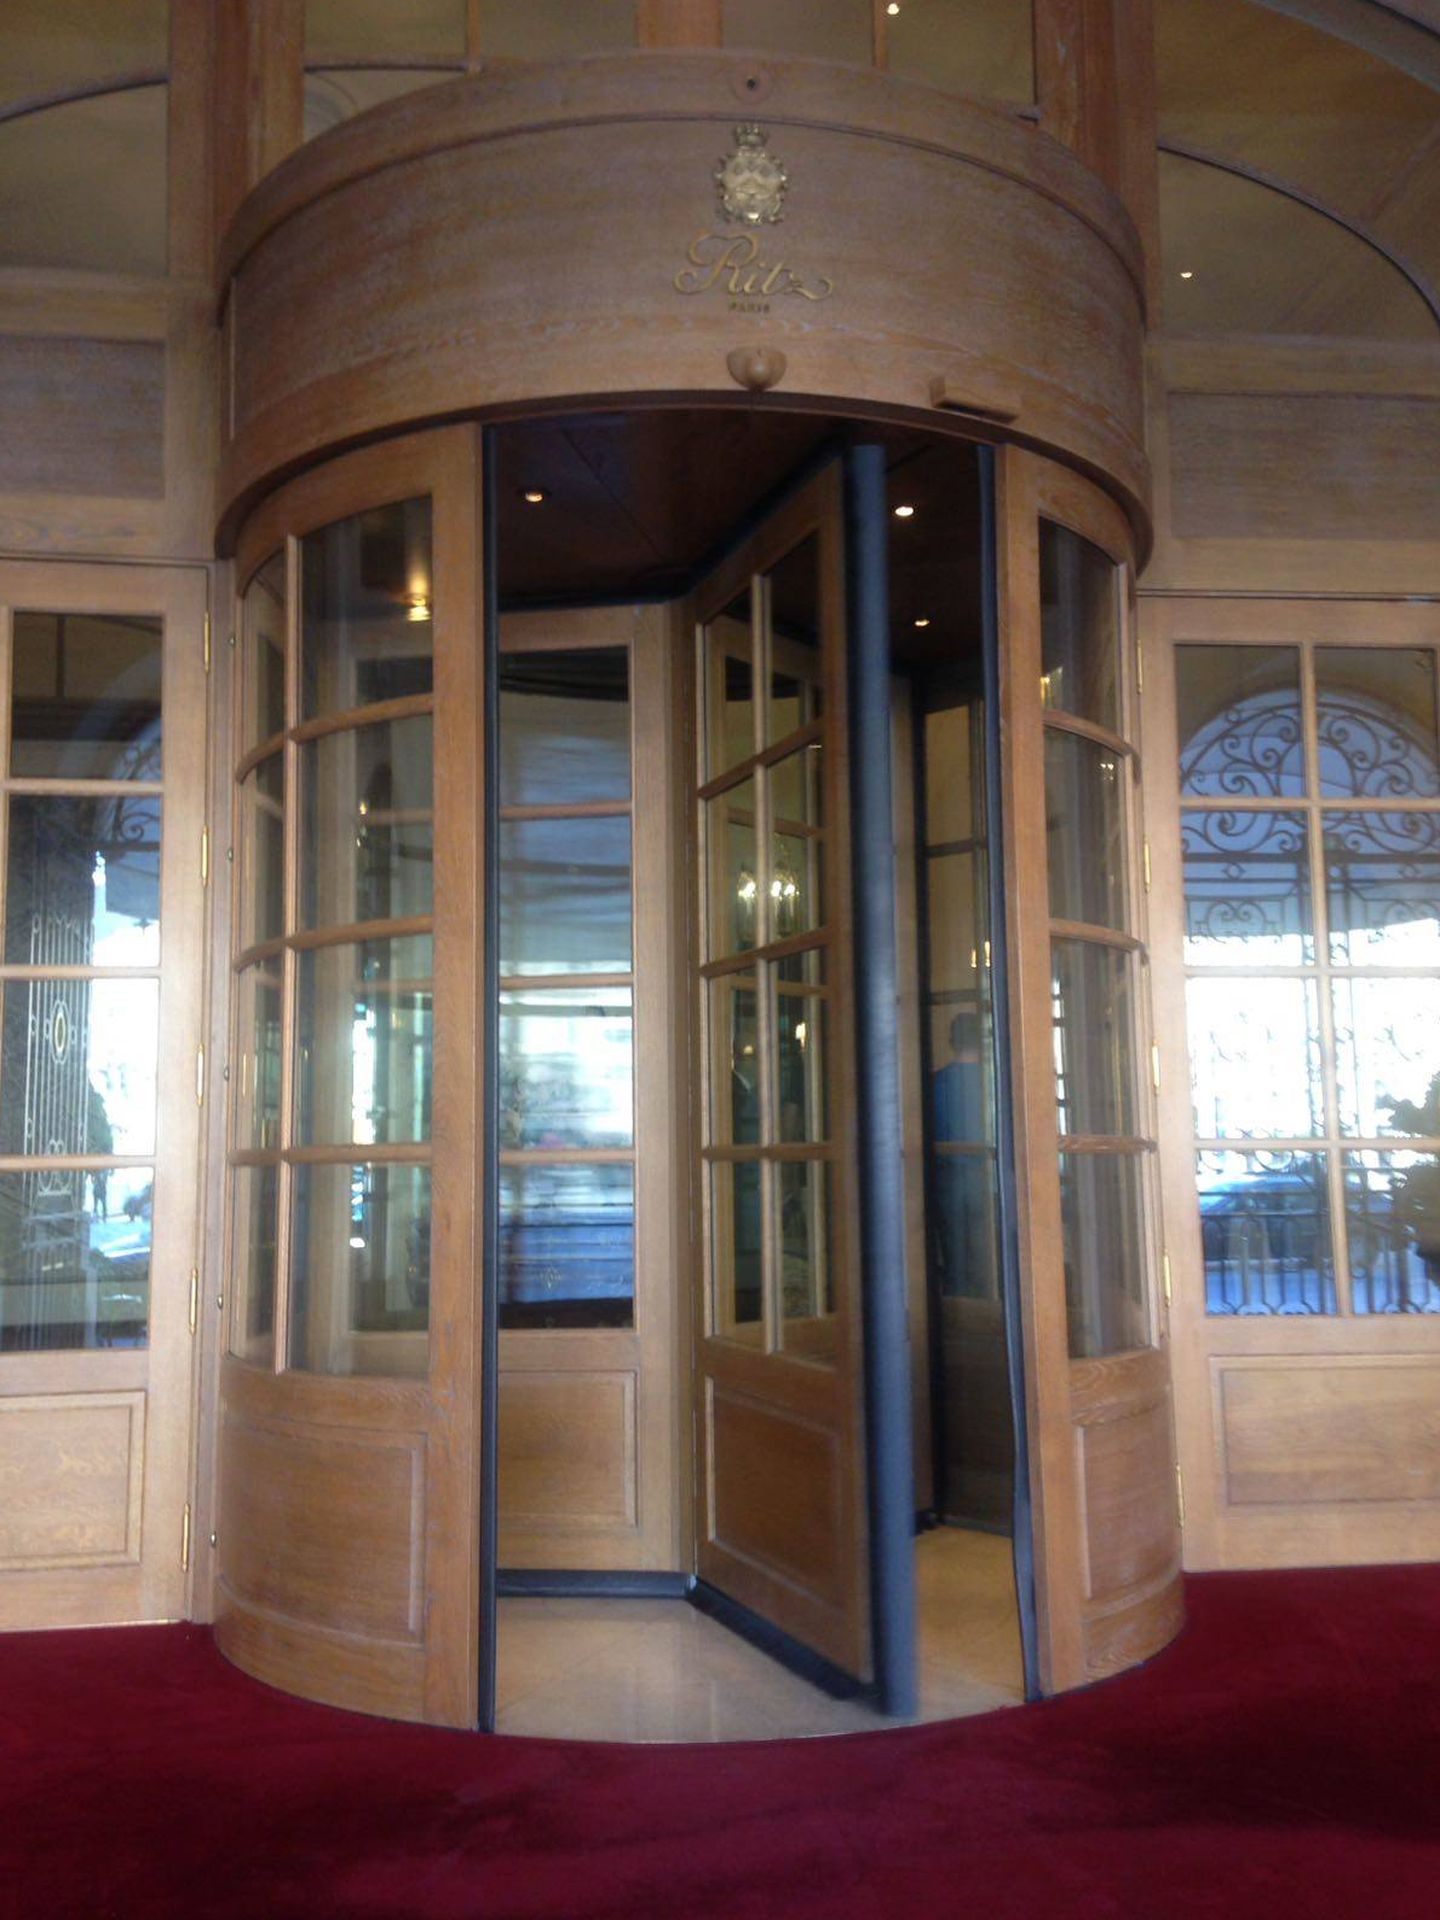 Puerta giratoria de entrada al hotel Ritz de París. (S. Taulés)